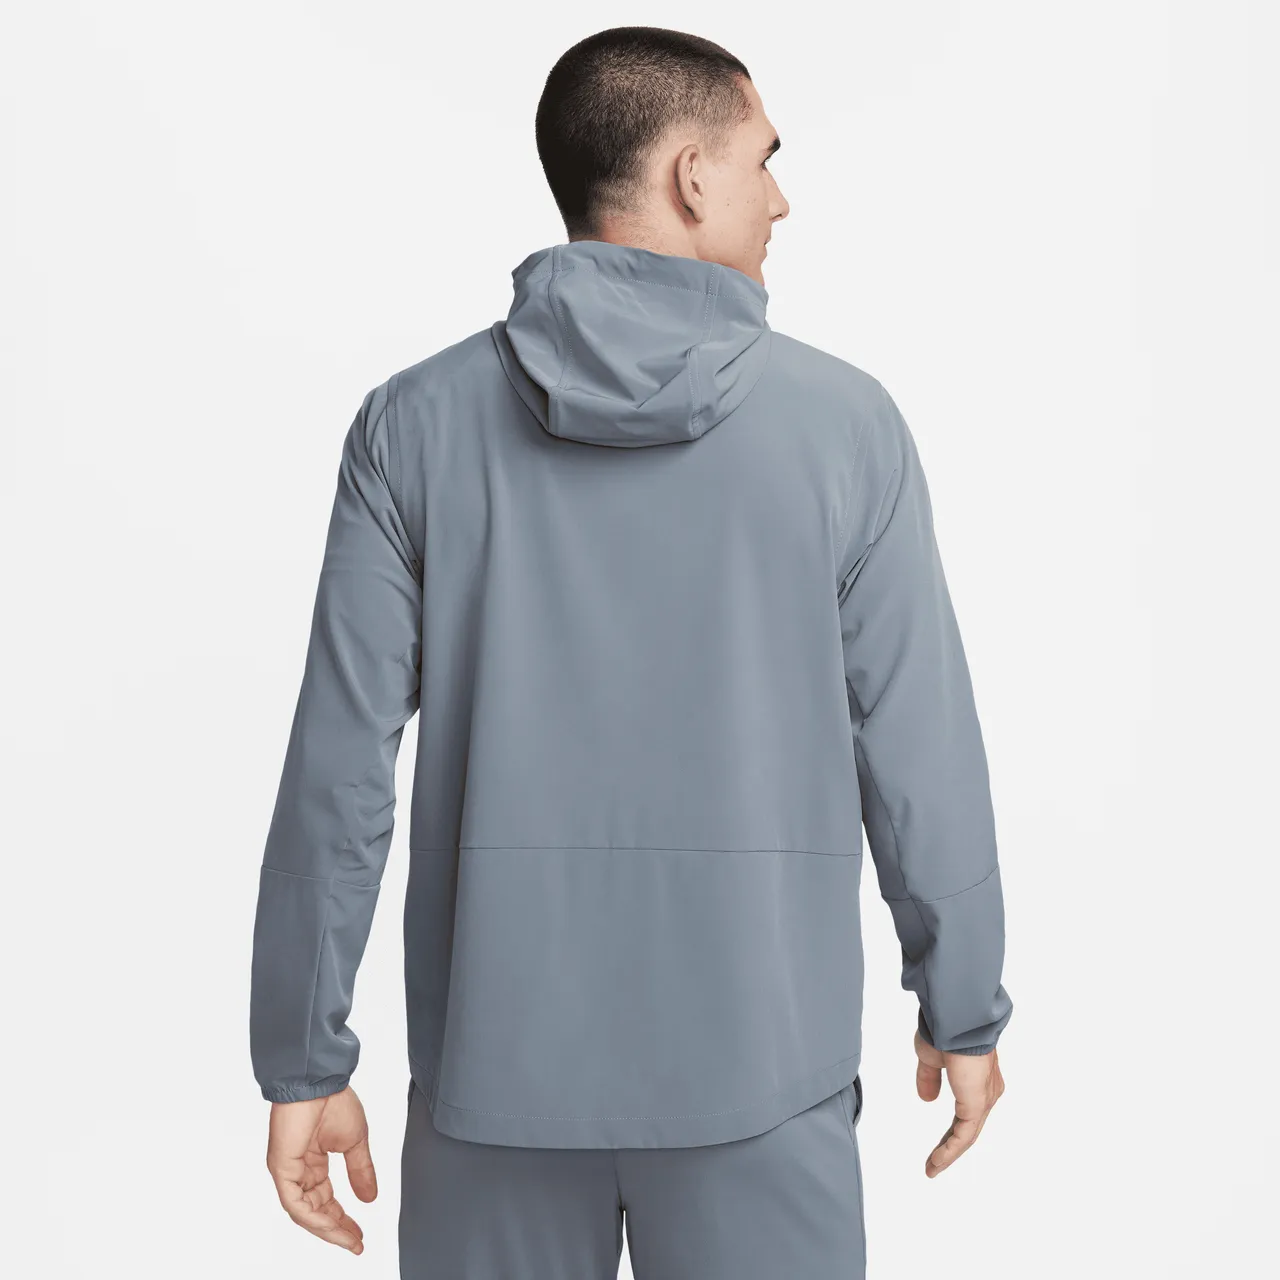 Nike Unlimited vielseitige, wasserabweisende Jacke mit Kapuze für Herren - Grau